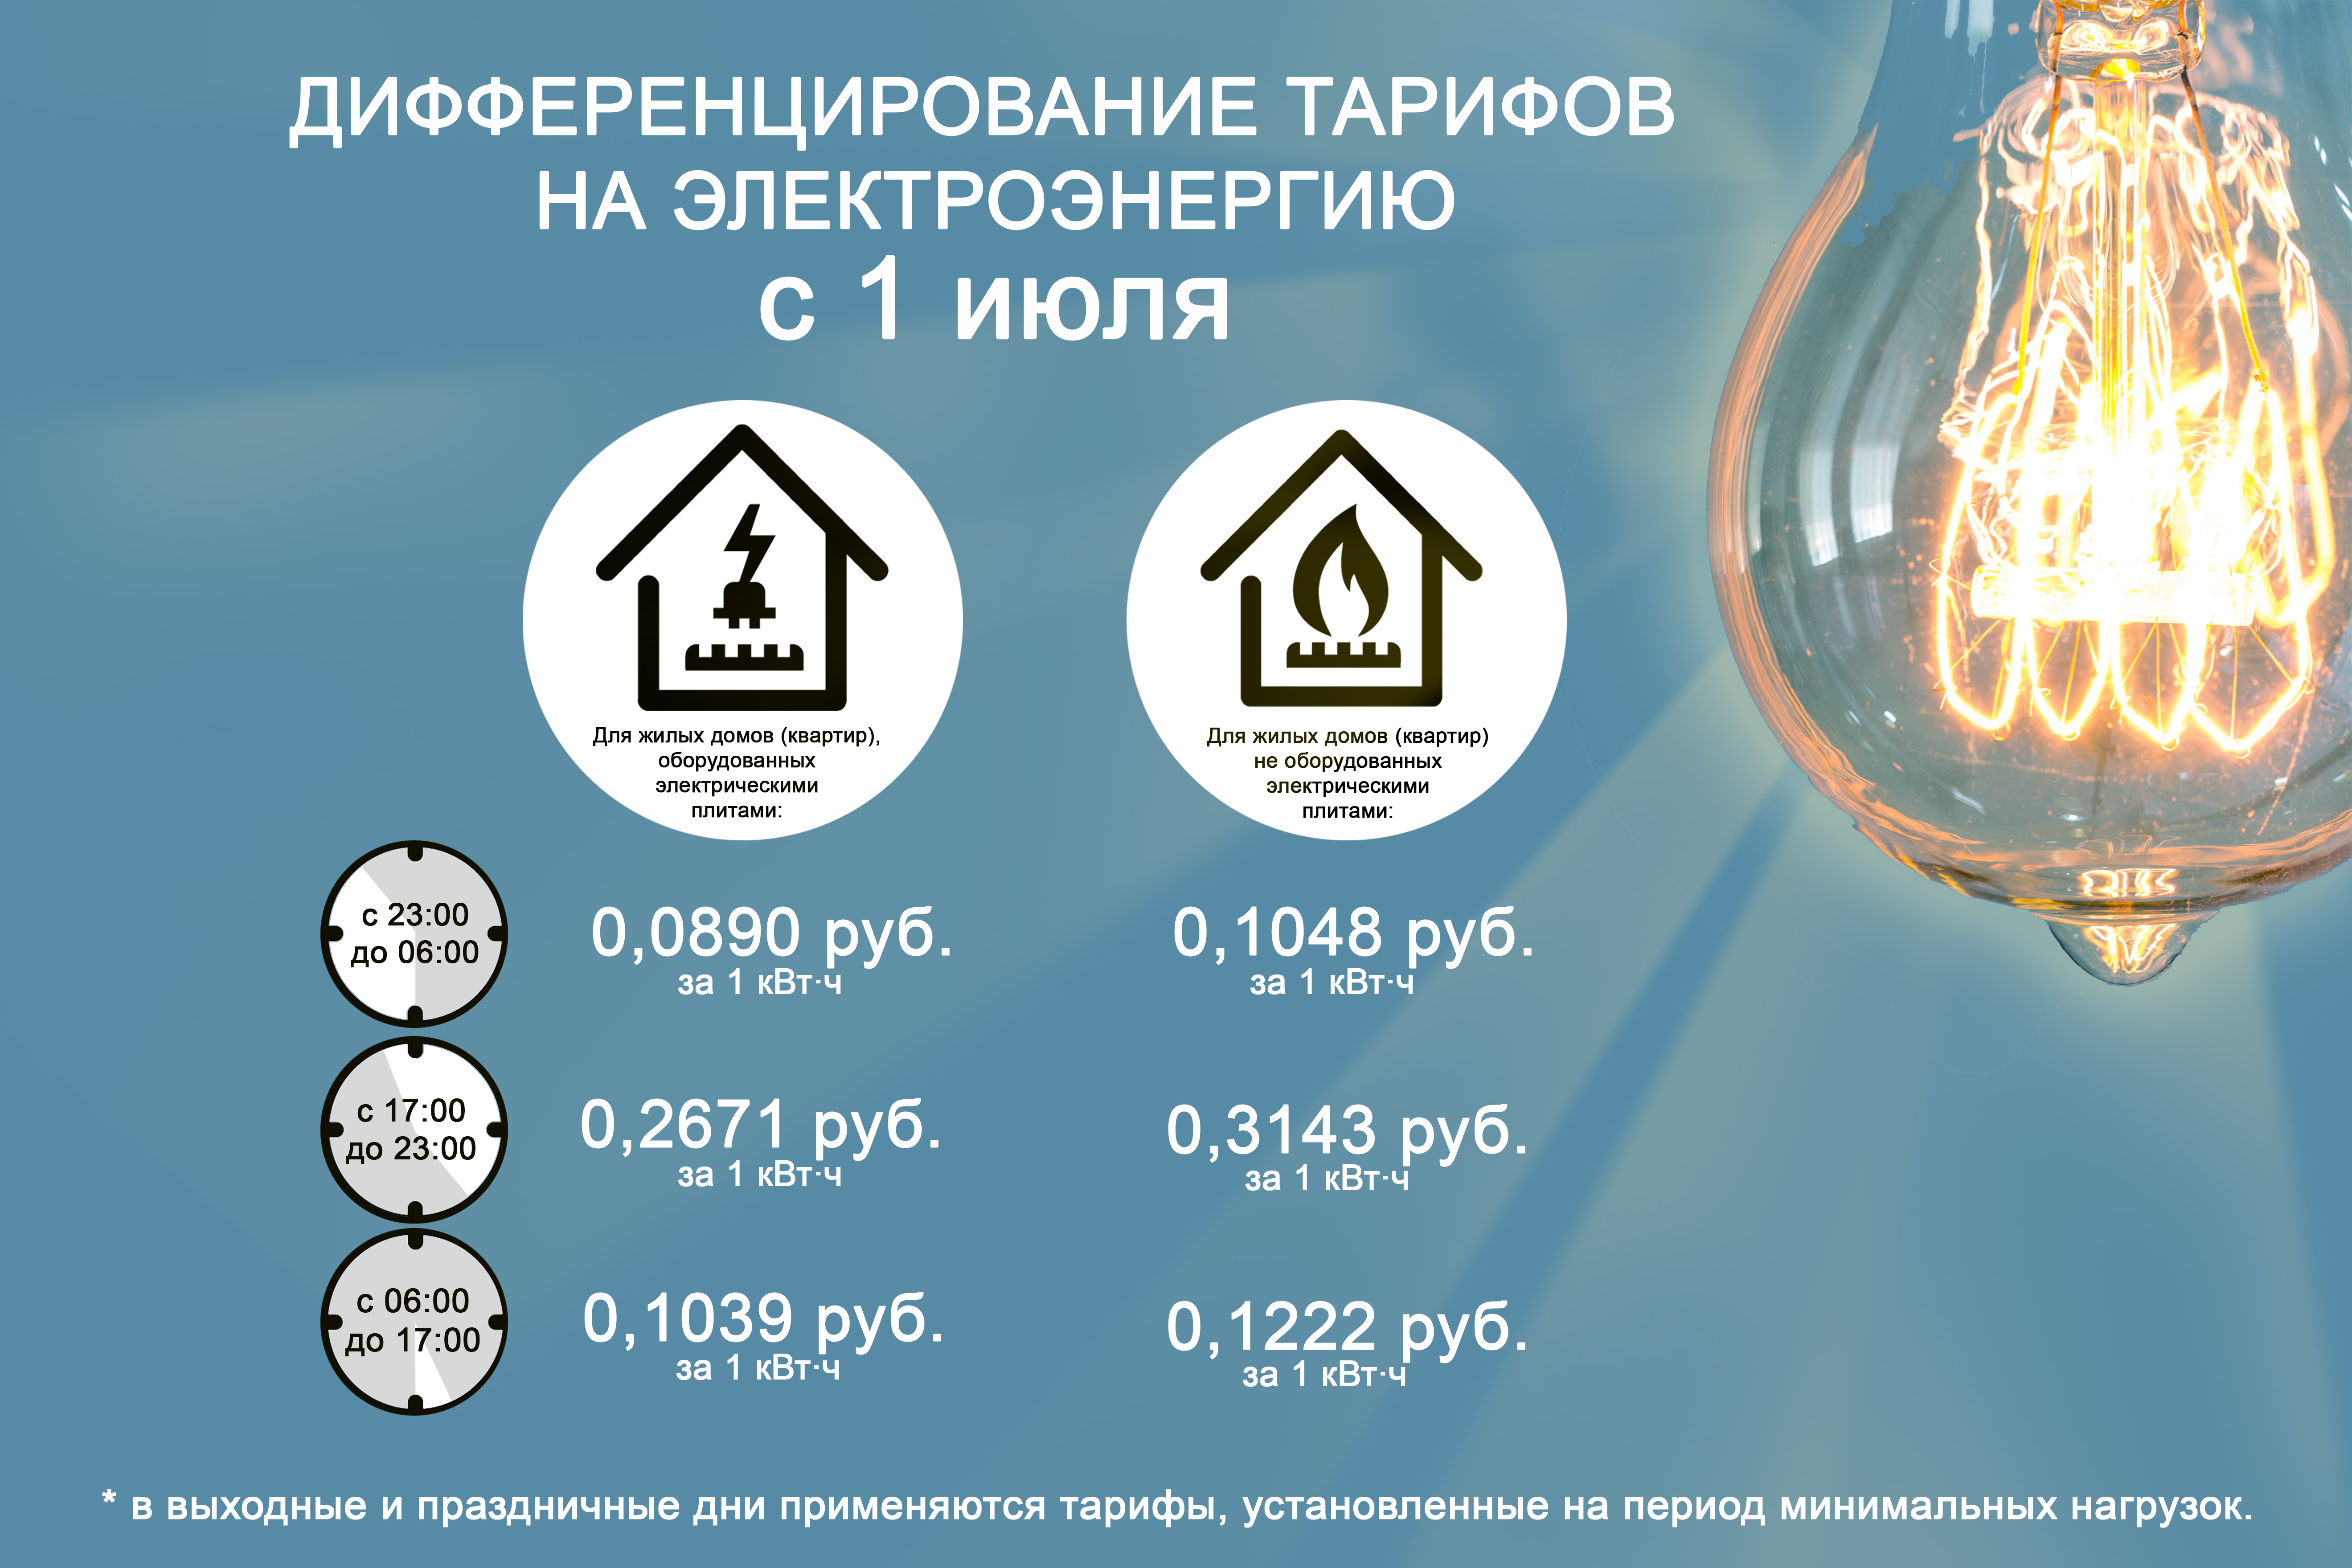 Тарифы на электроэнергию в россии сильно. Тарифы на электроэнергию. Льготный тариф на электроэнергию. Тариф выходного дня на электроэнергию. Повышение тарифов на электроэнергию.